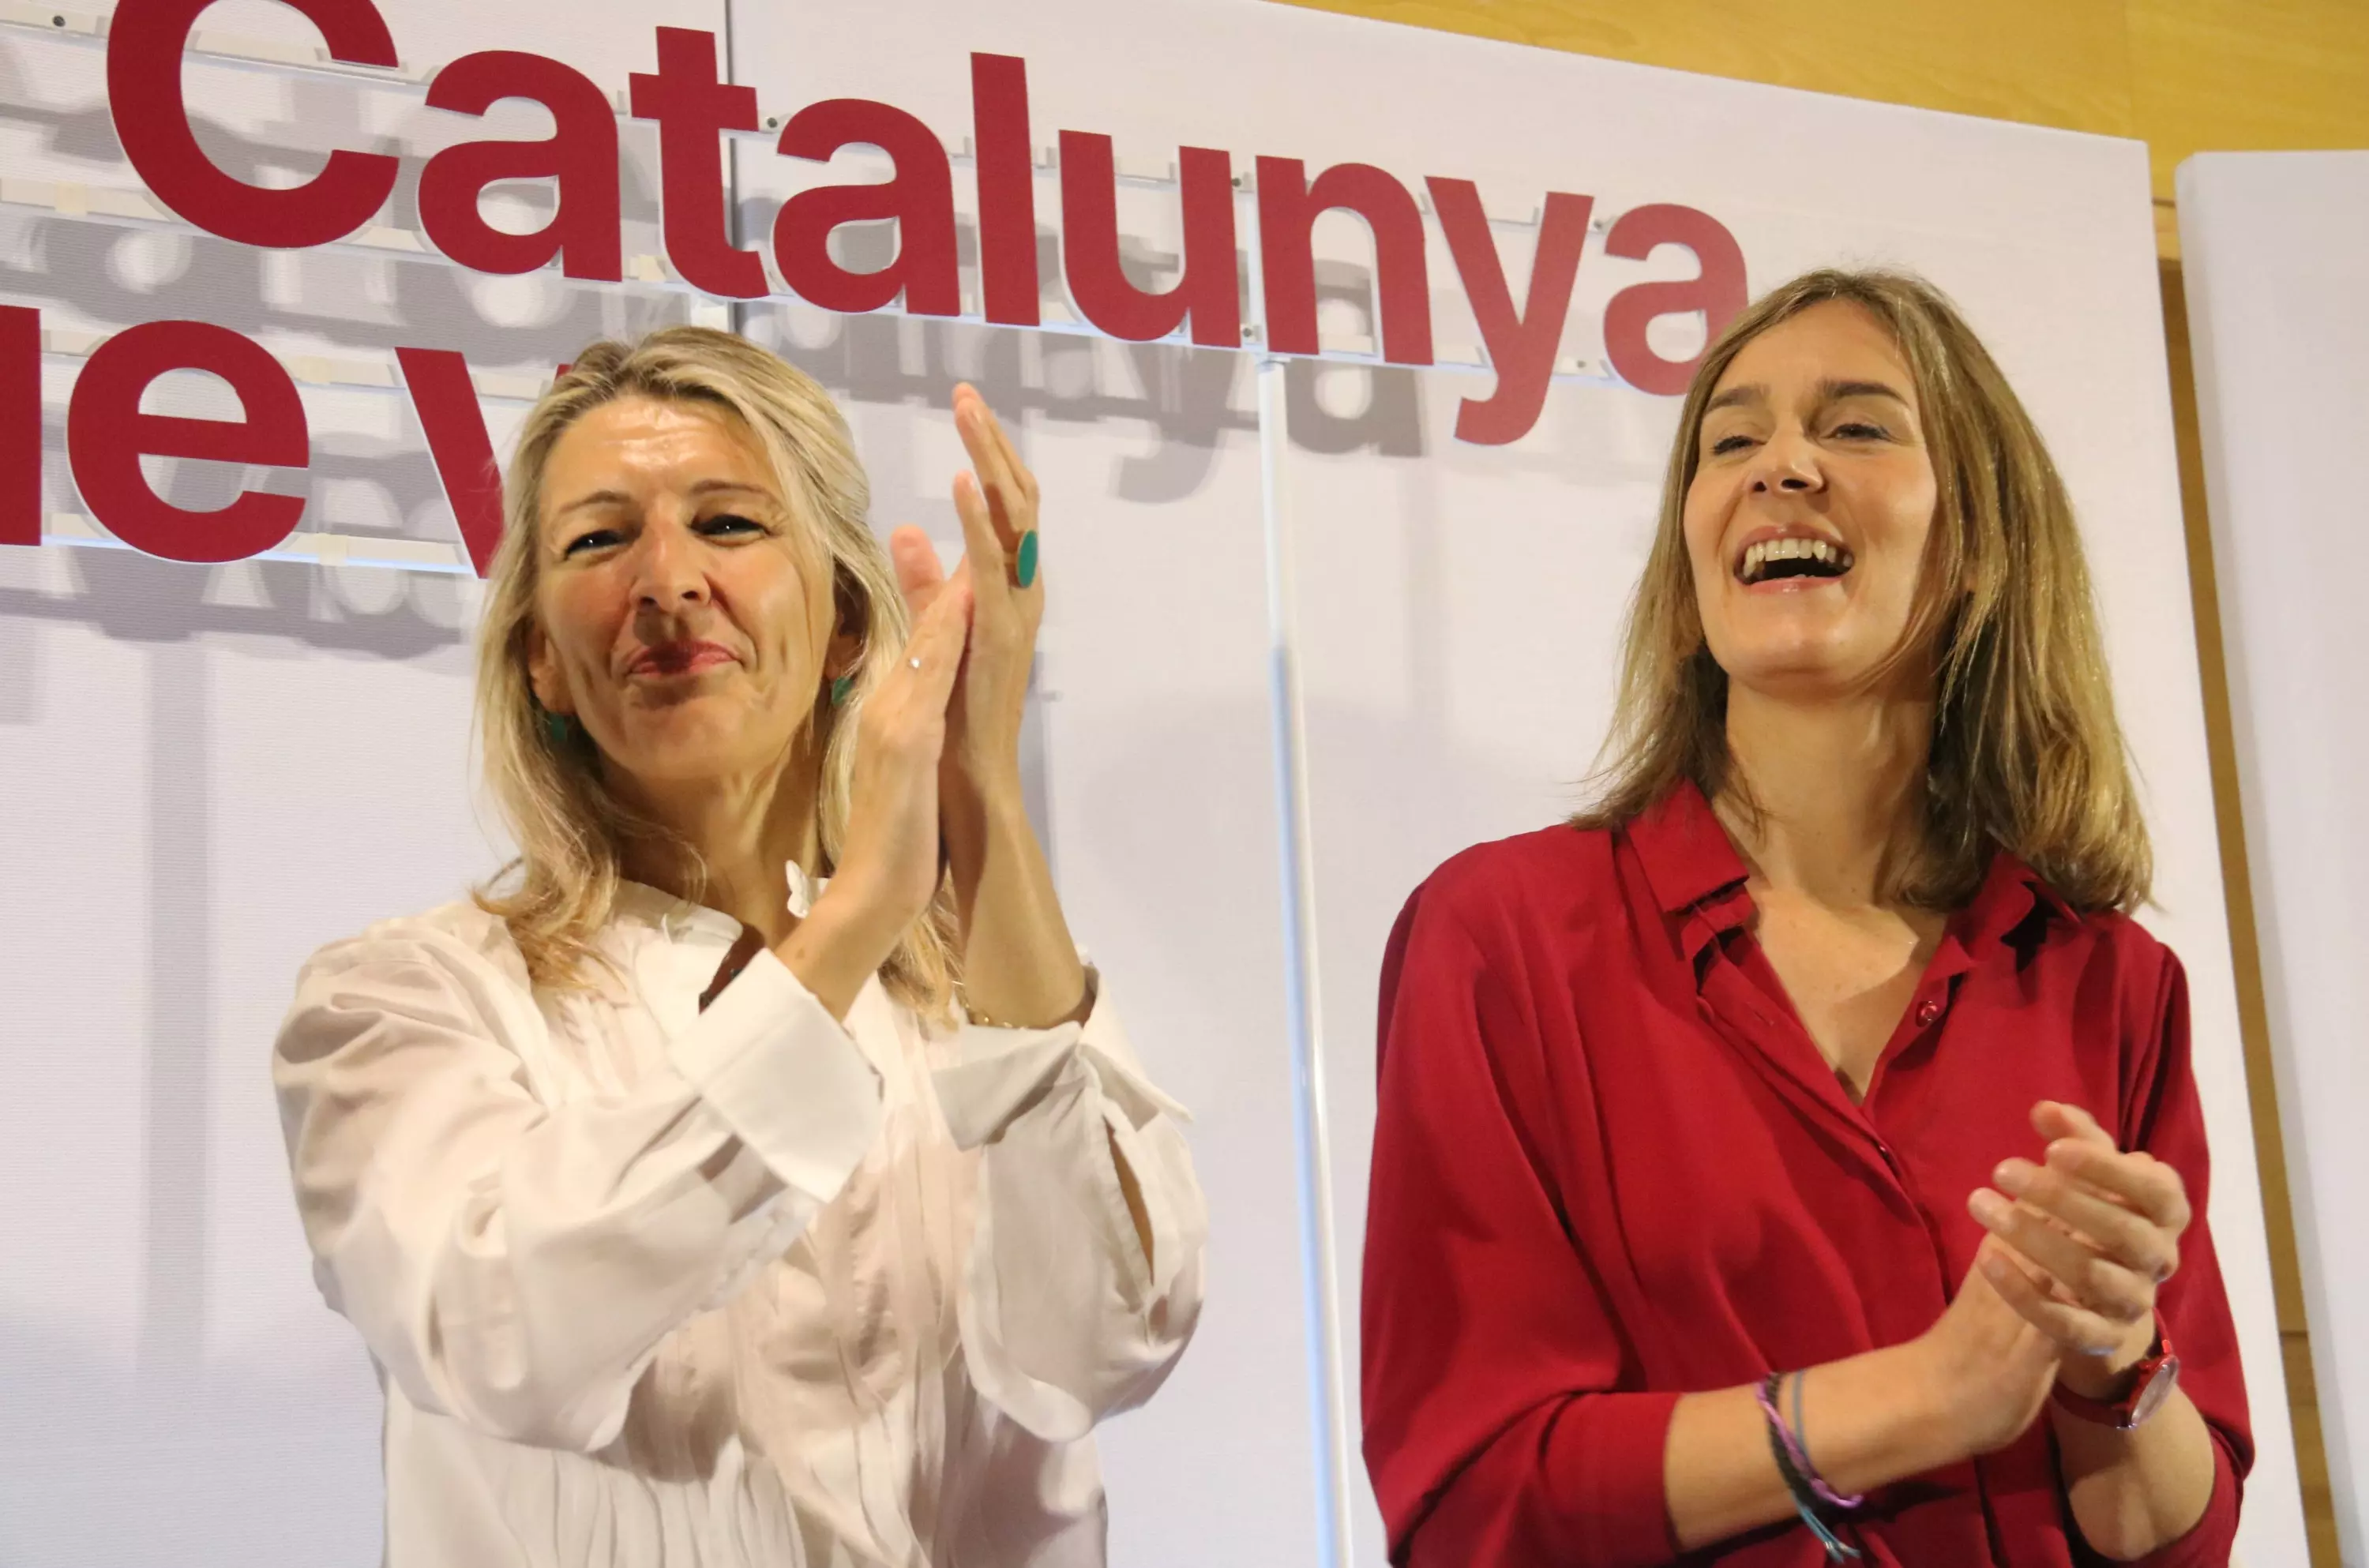 La vicepresidenta del Gobierno español, Yolanda Diaz, con la candidata de Comuns Sumar a la Generalitat, Jéssica Albiach, durante un acto de campaña. Imagen de archivo. — Gerard Artigas / ANC